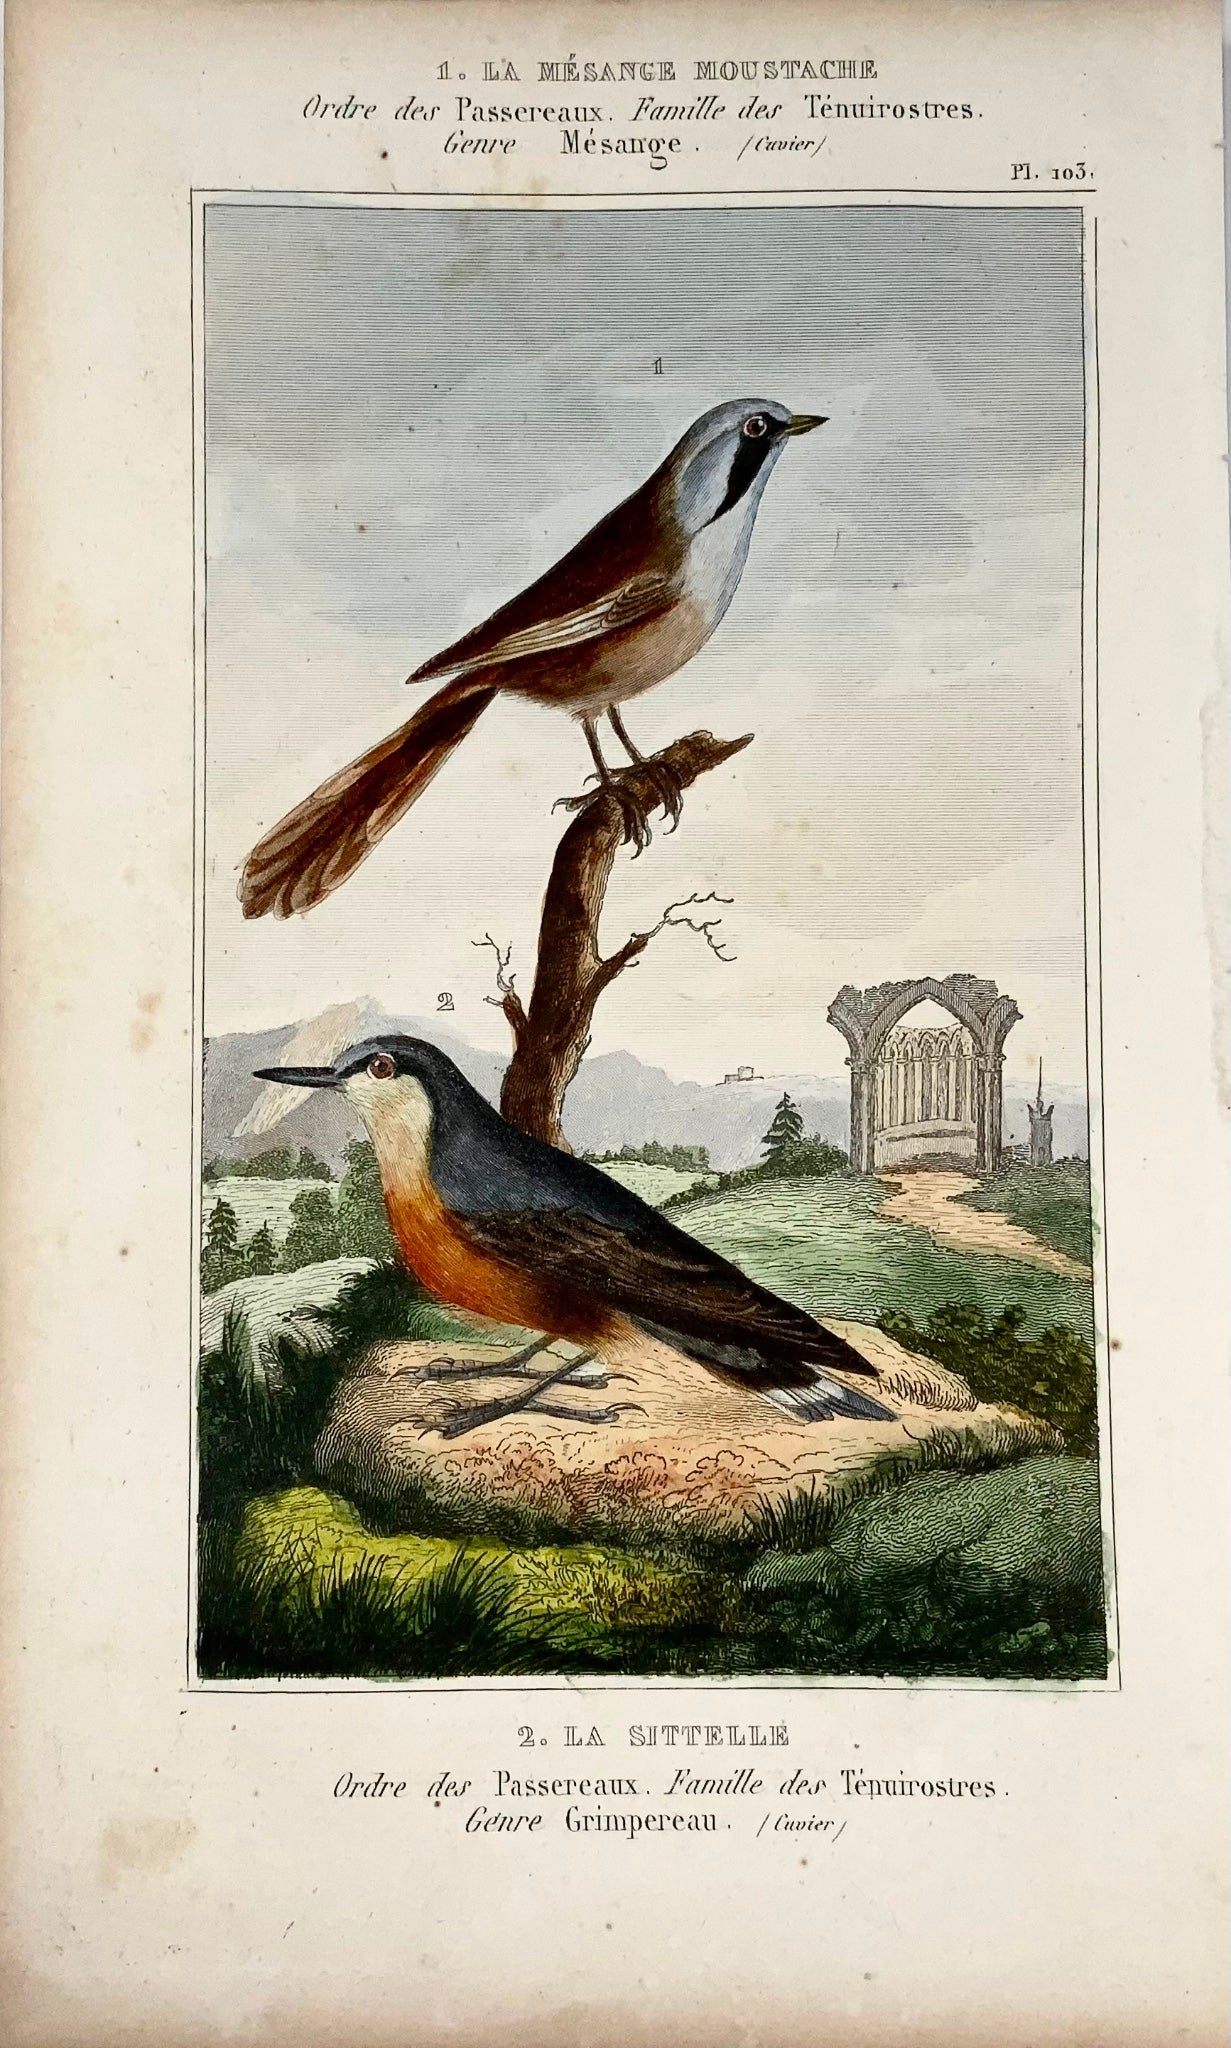 1822 Cannione, Picchio muratore, ornitologia, incisione, bel colore originale a mano